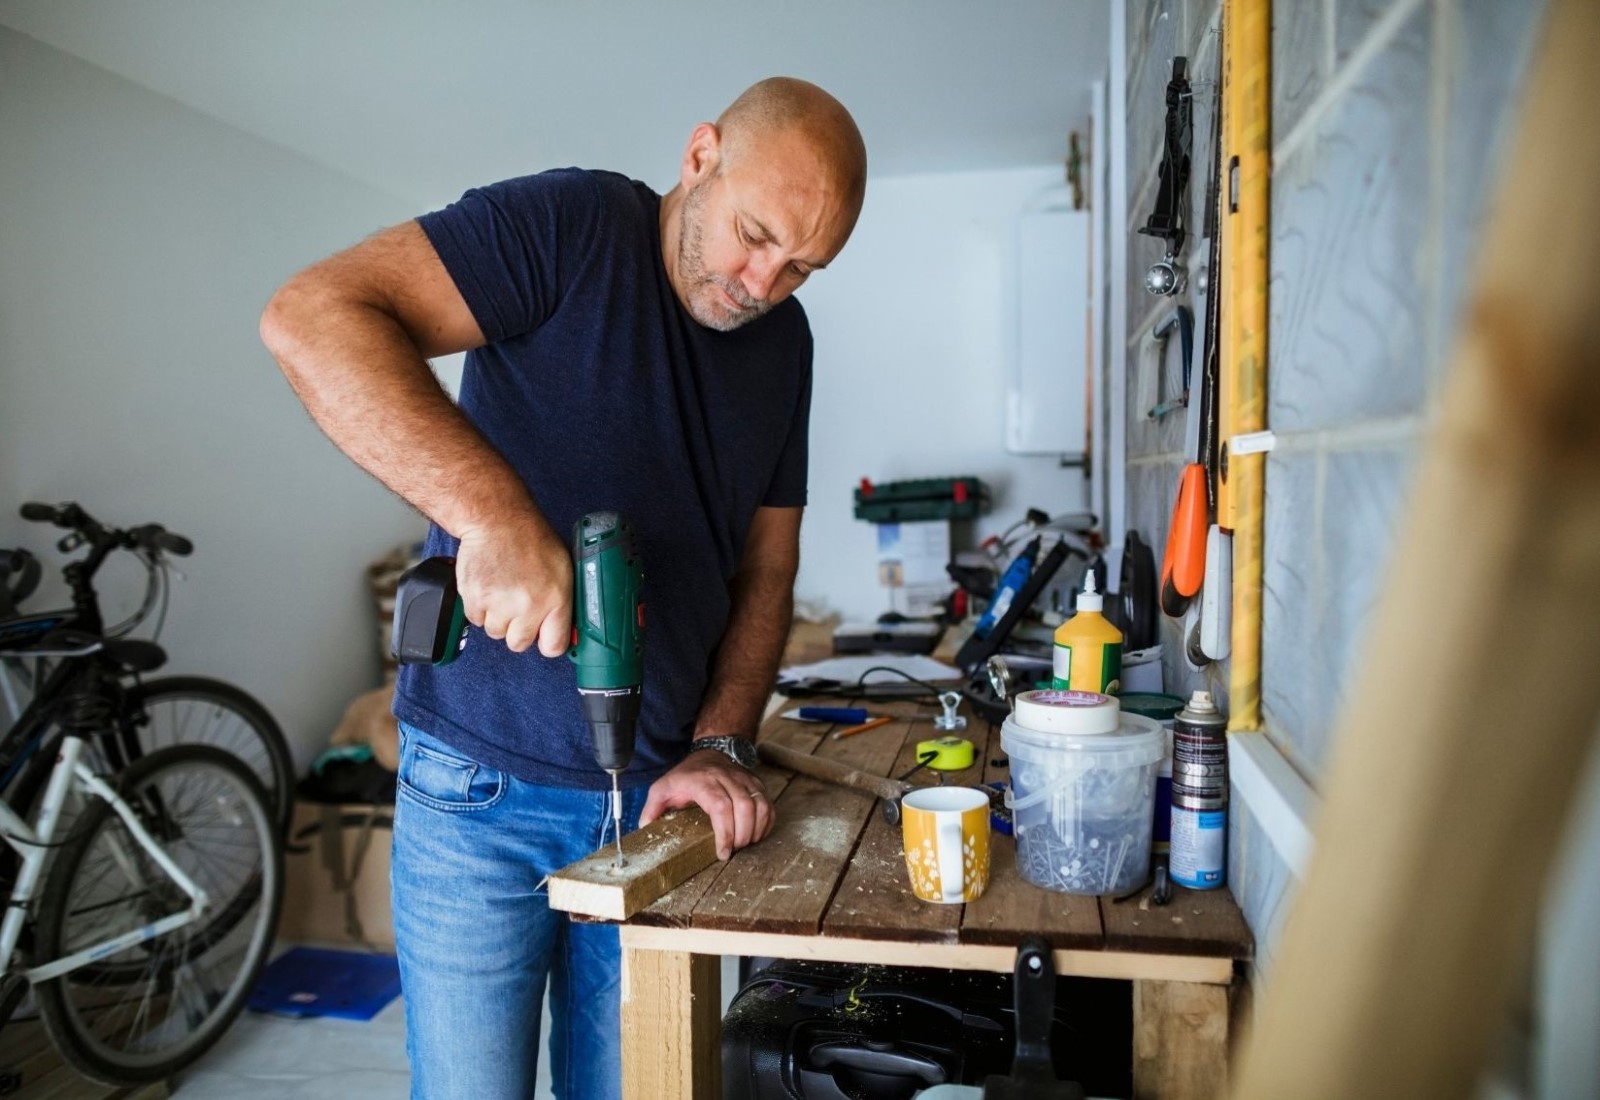 Residential Handyman DIY repair small job building